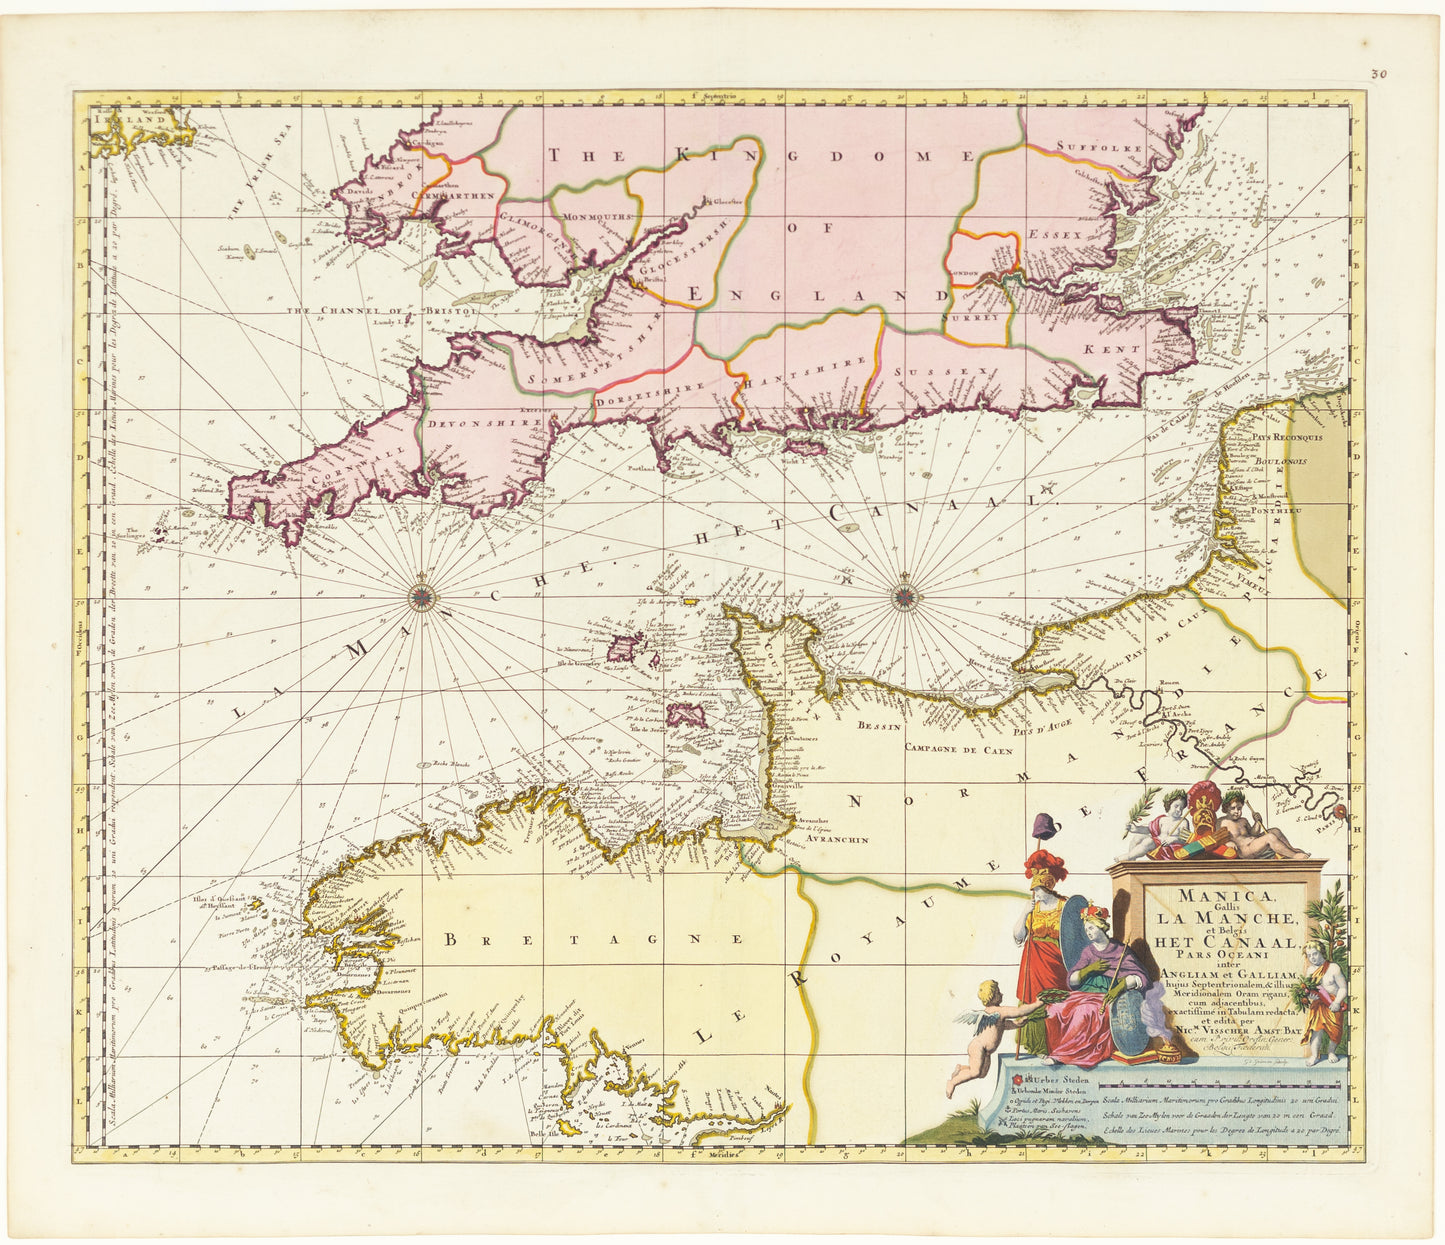 Visscher, Nicolaes. Manica Gallis La Manche et Belgis Het Canaal, Pars Oceani inter Angliam et Galliam. Amsterdam: 1698